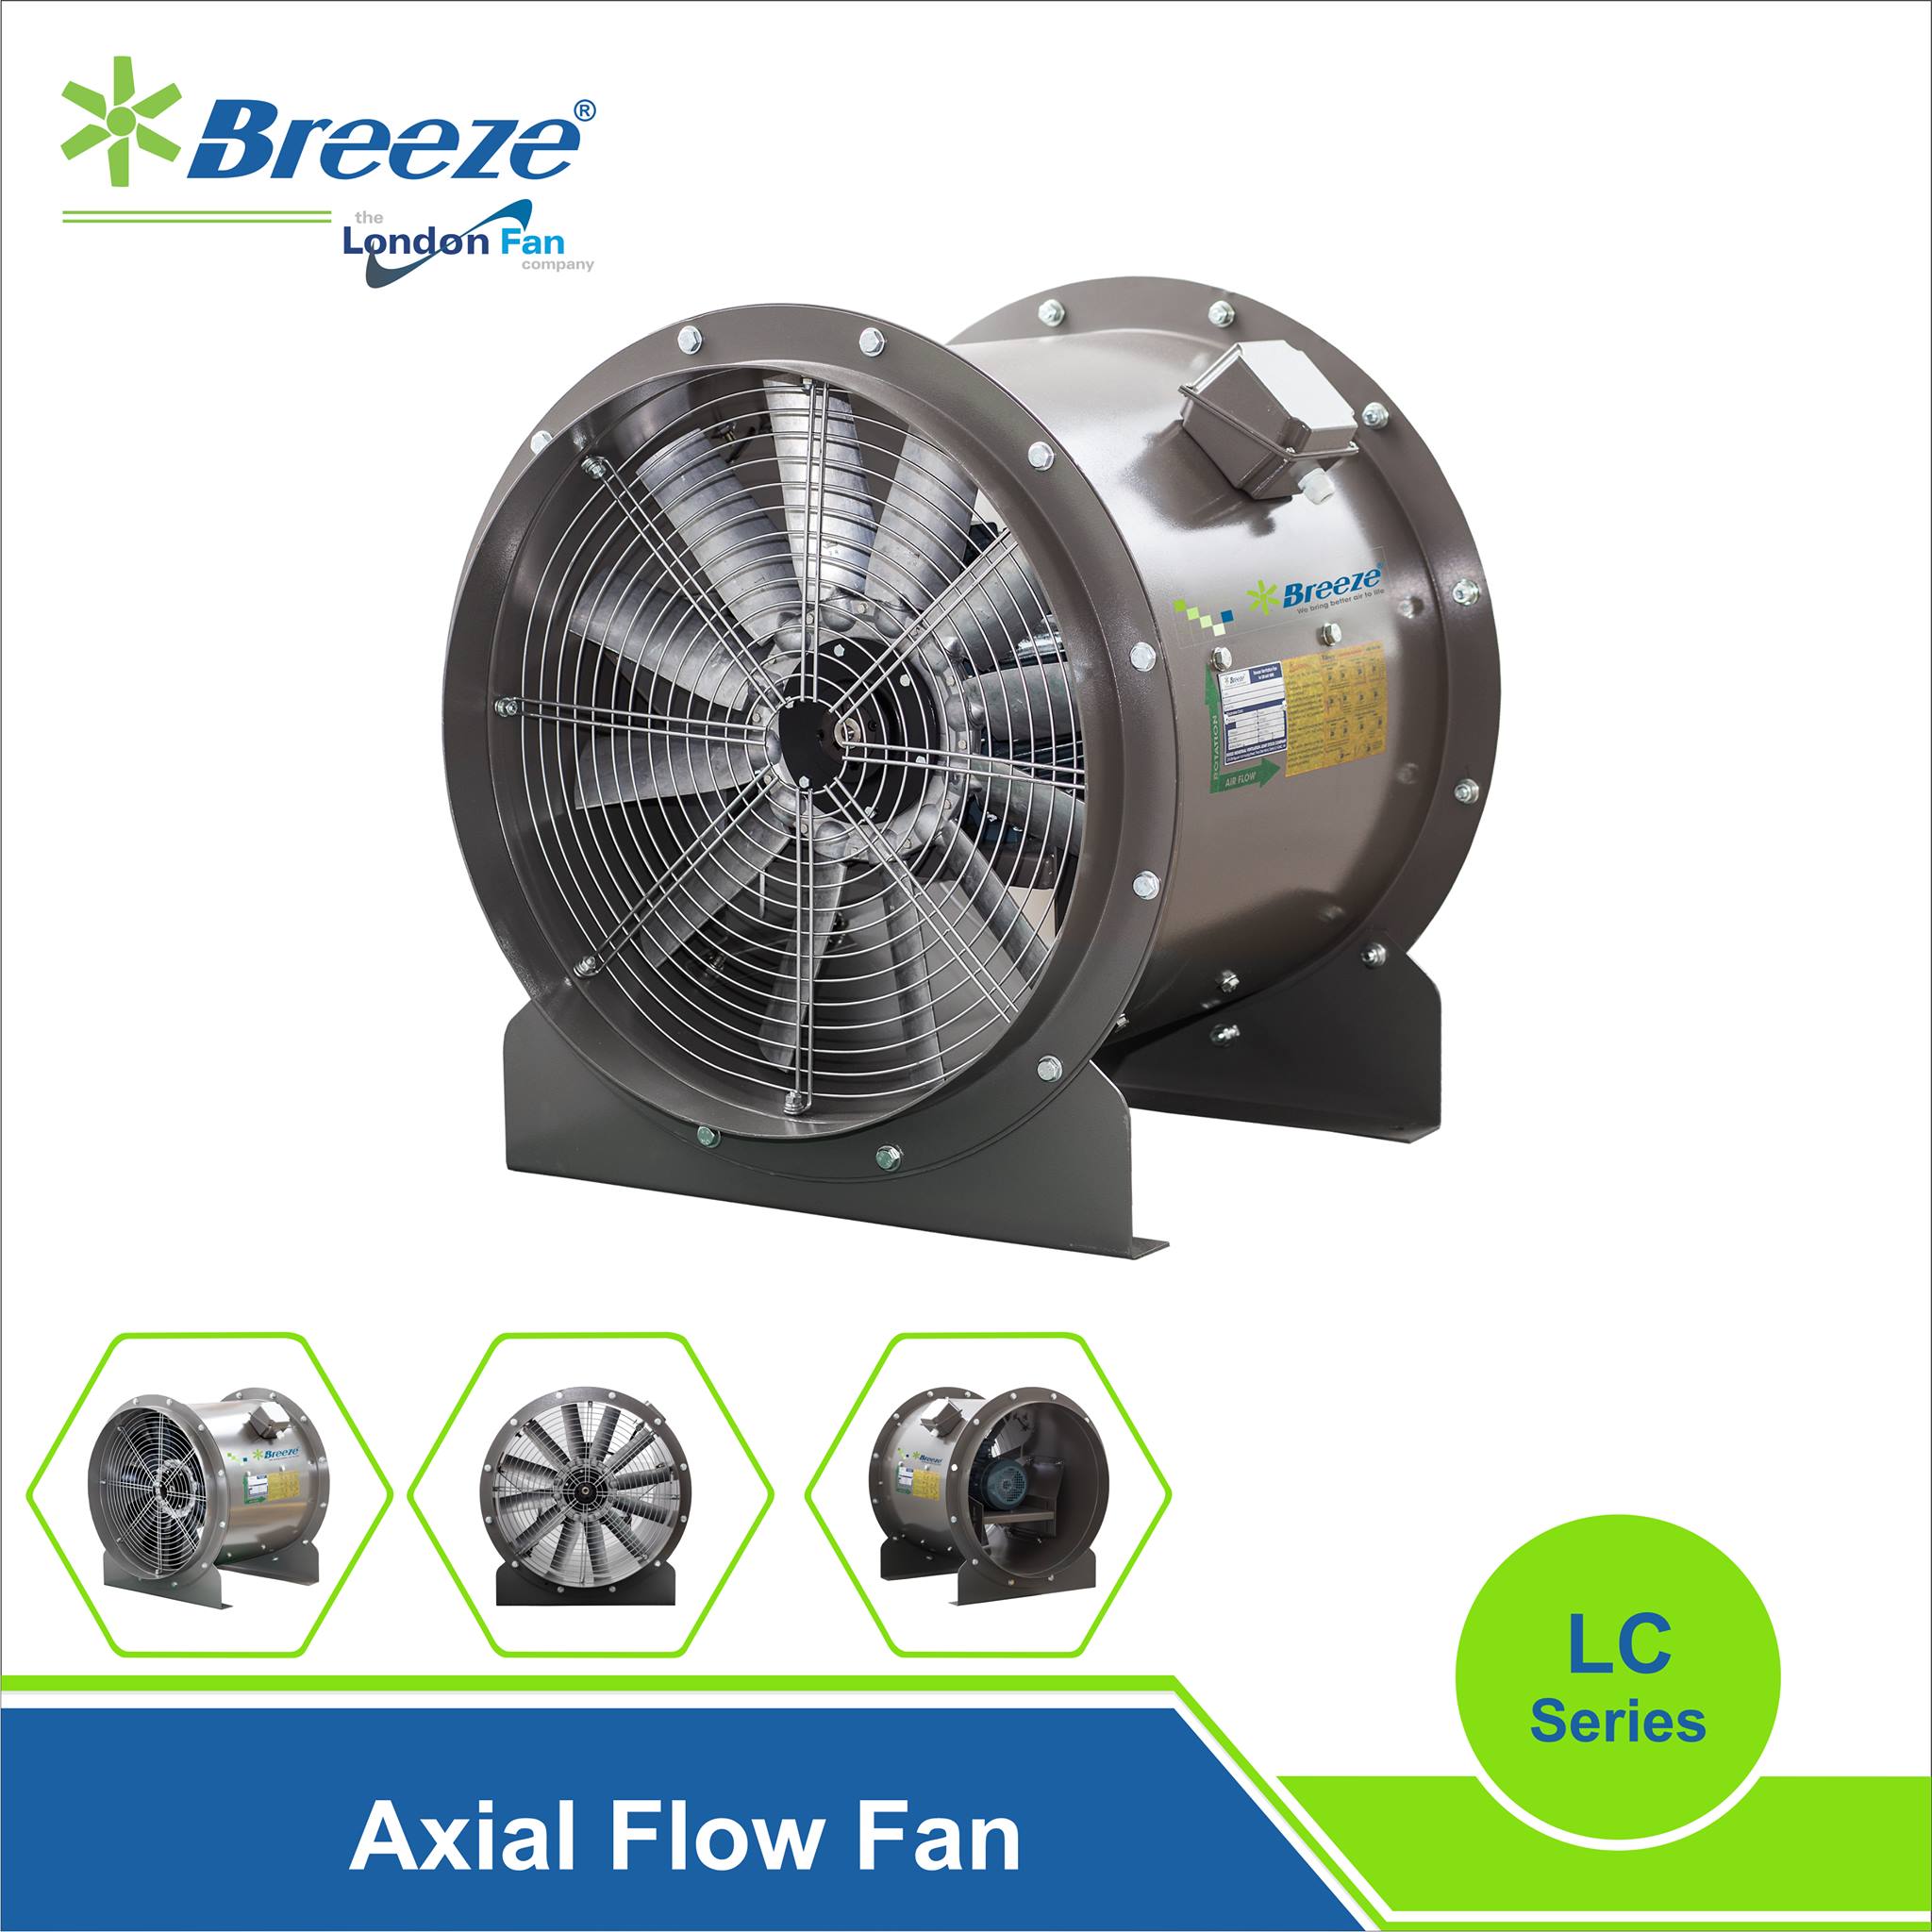 Long Case Axial Flow Fan